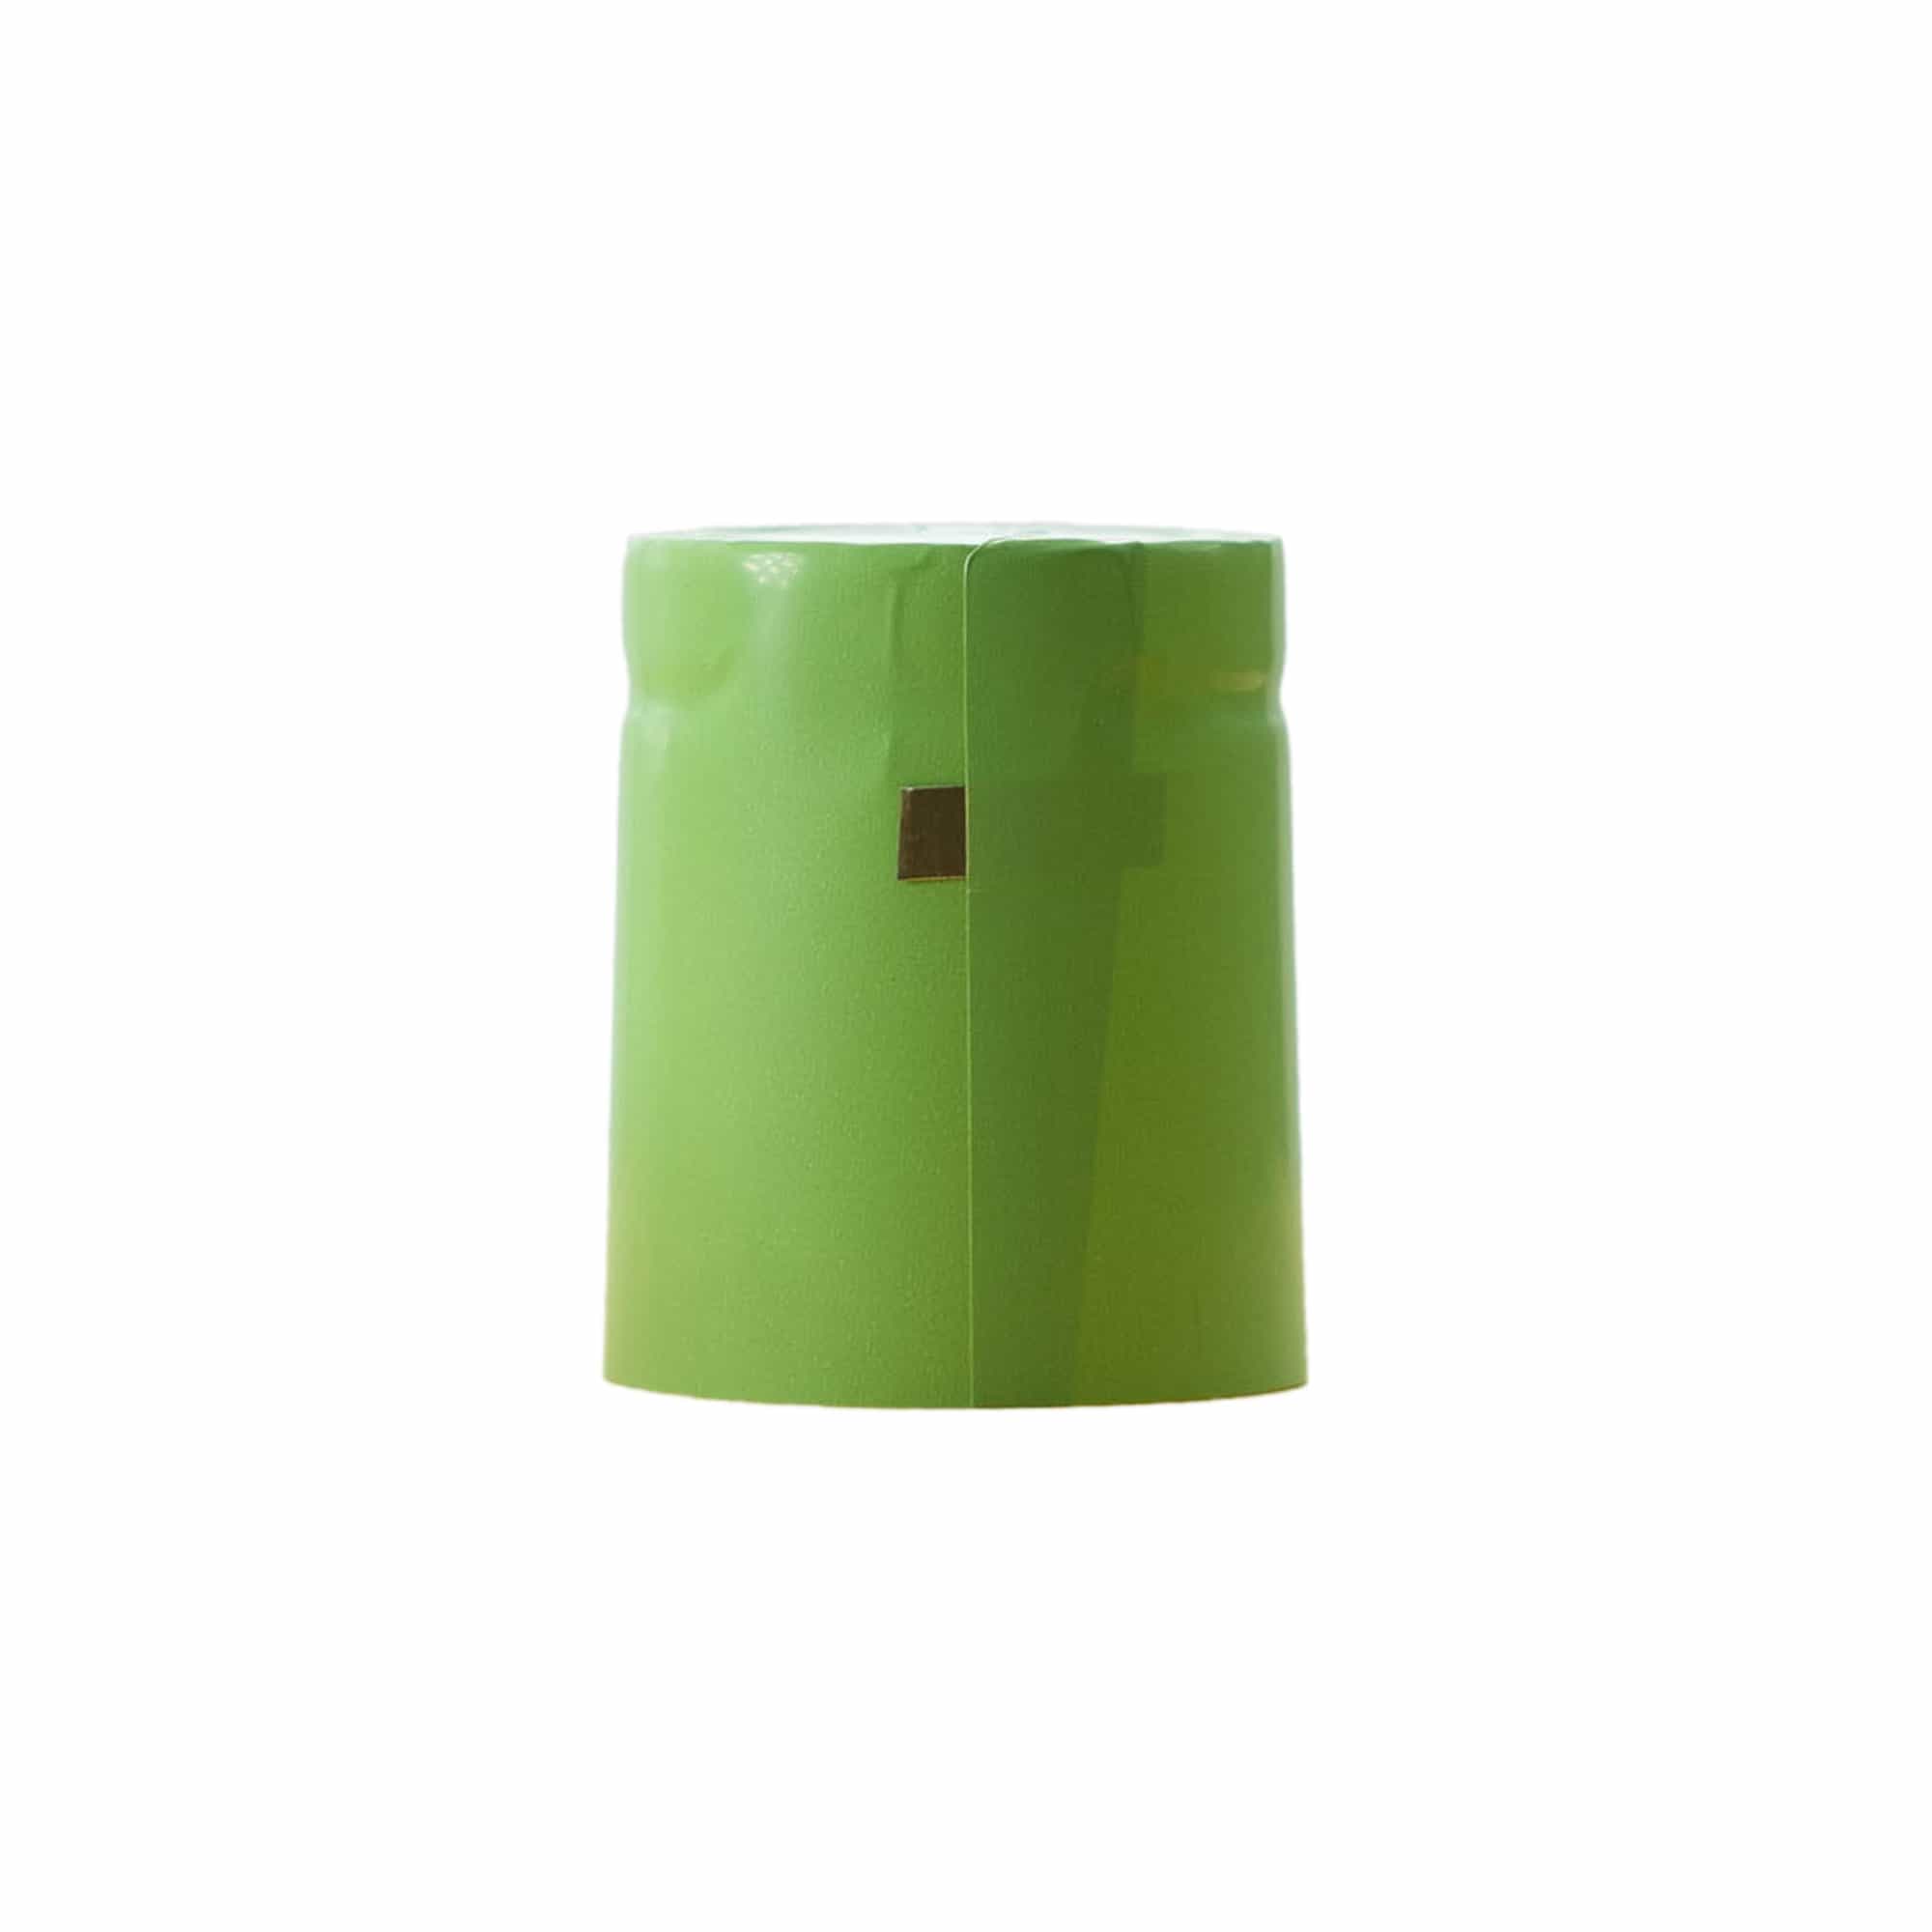 Kapturek termokurczliwy 32x41, tworzywo sztuczne PVC, kolor zielony w odcieniu liści lipy